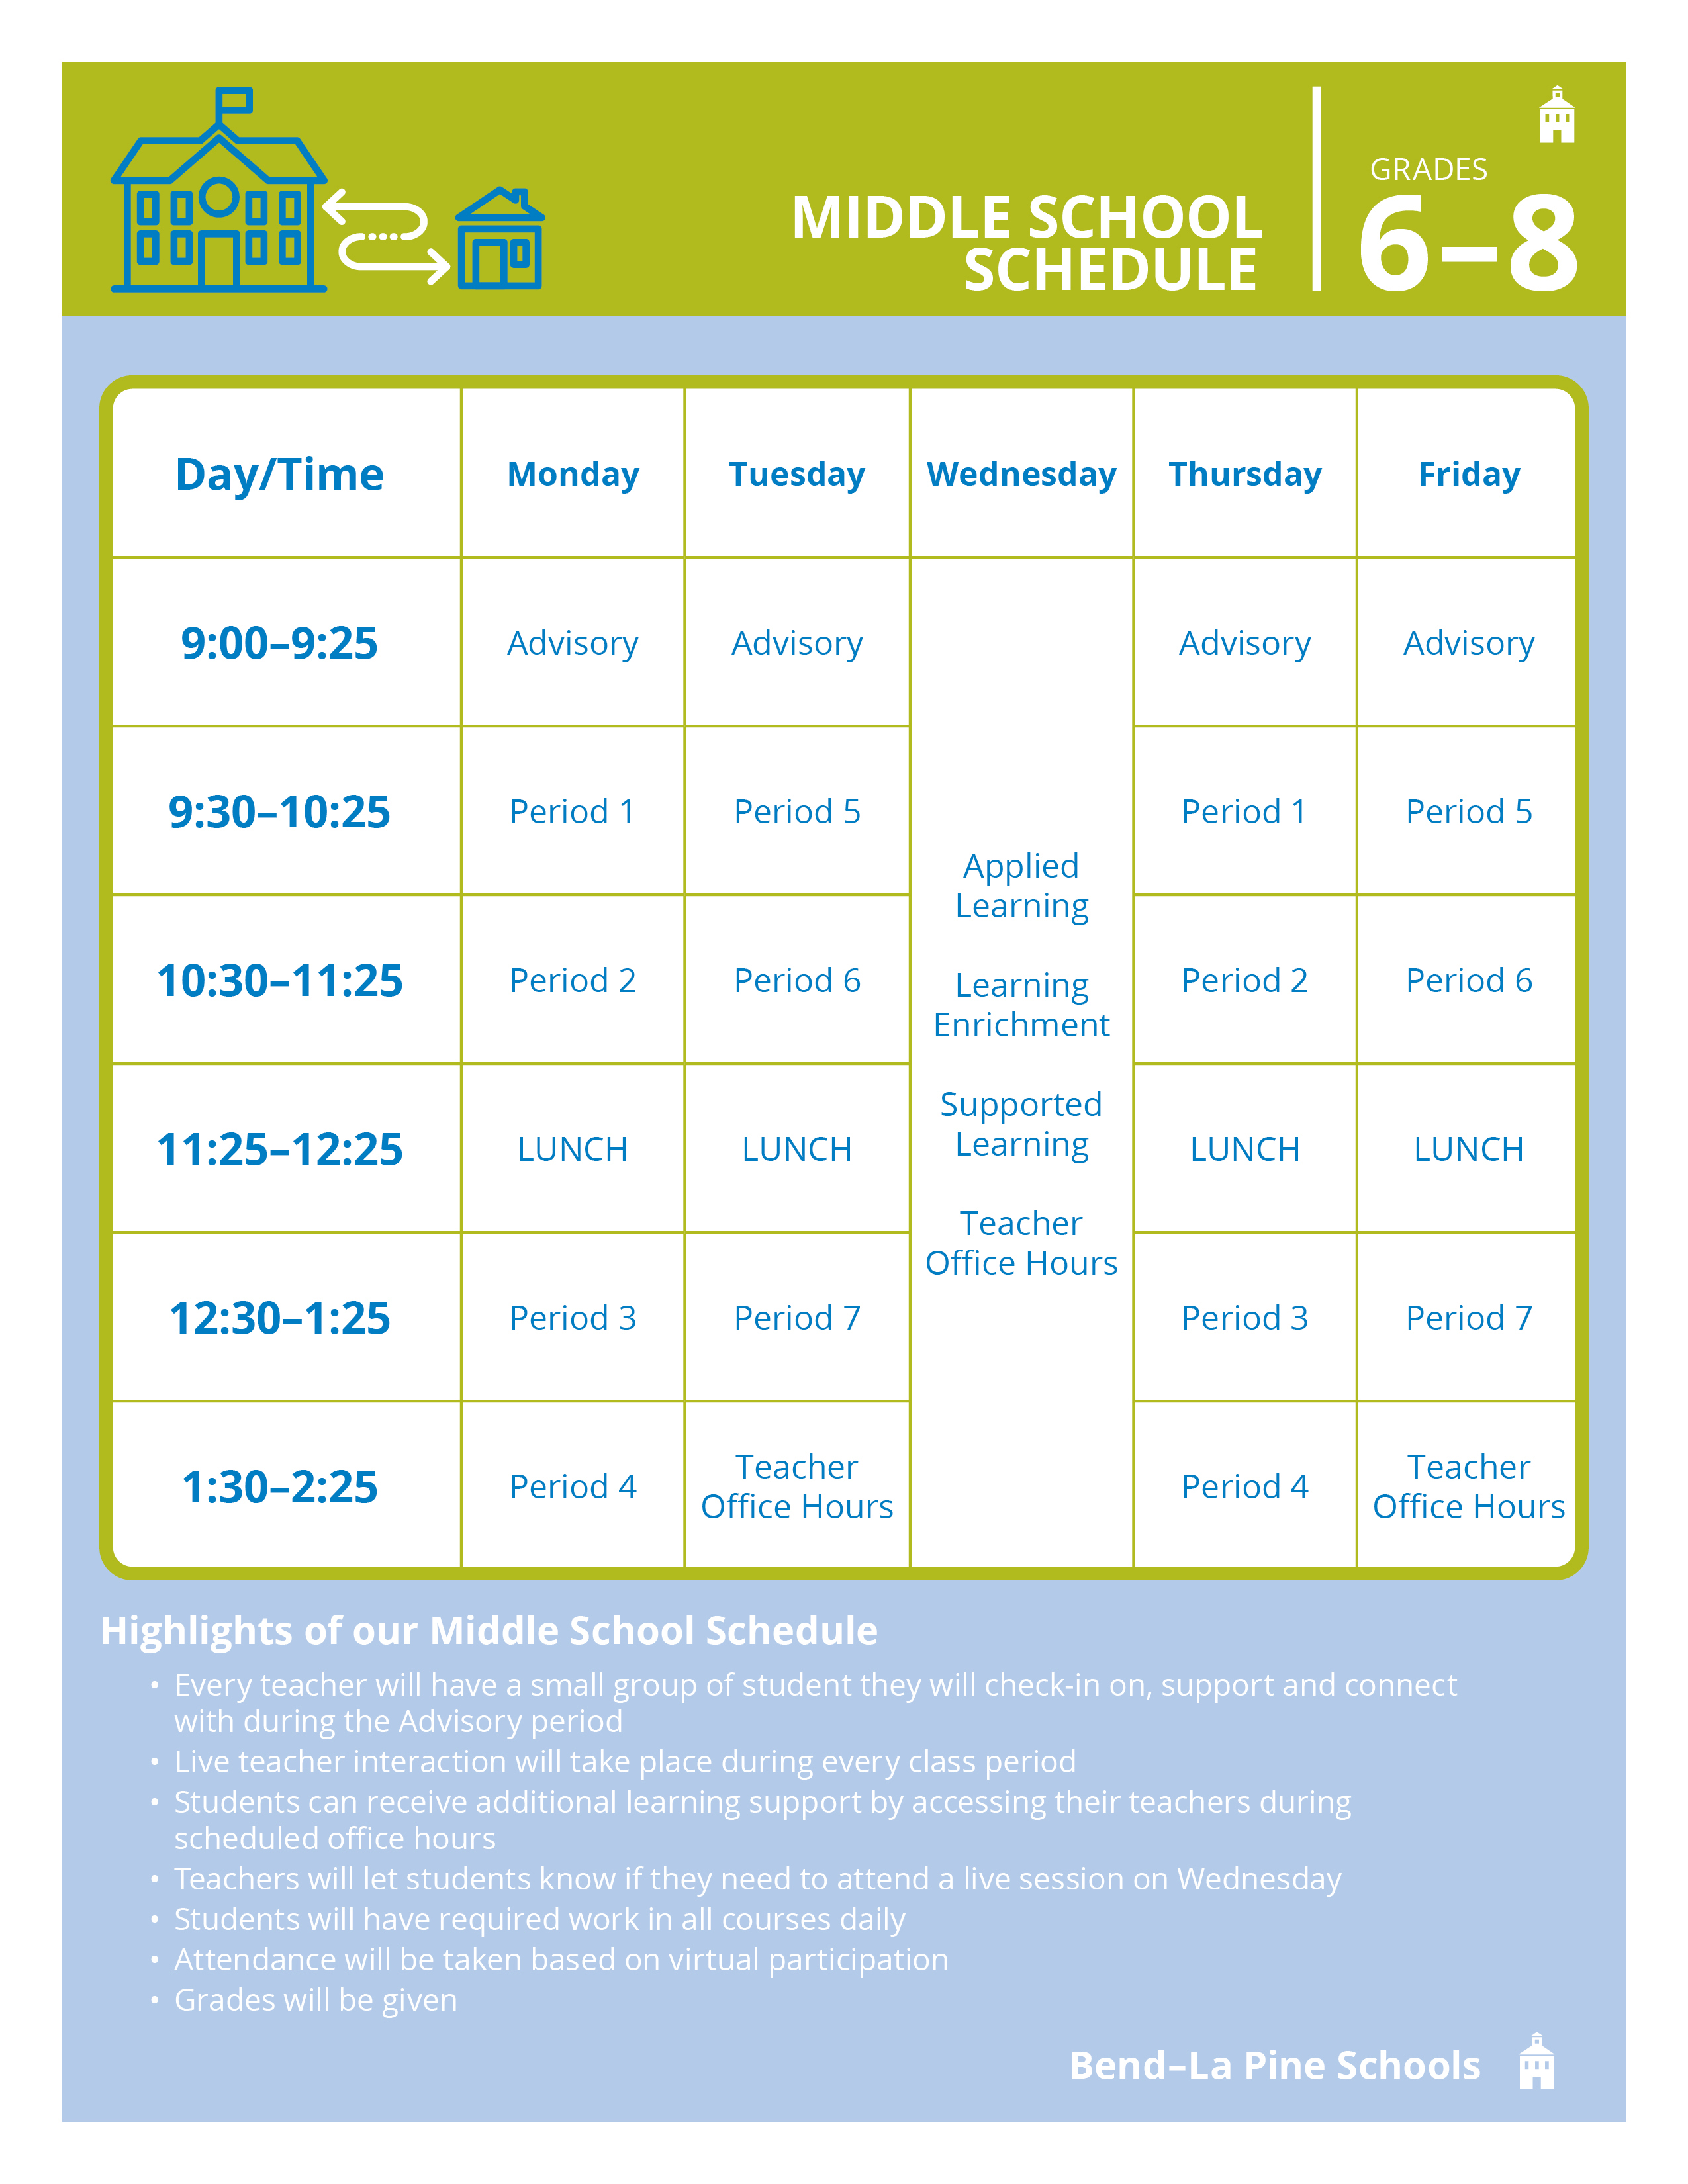 BendLa Pine Schools Daily Schedules Released